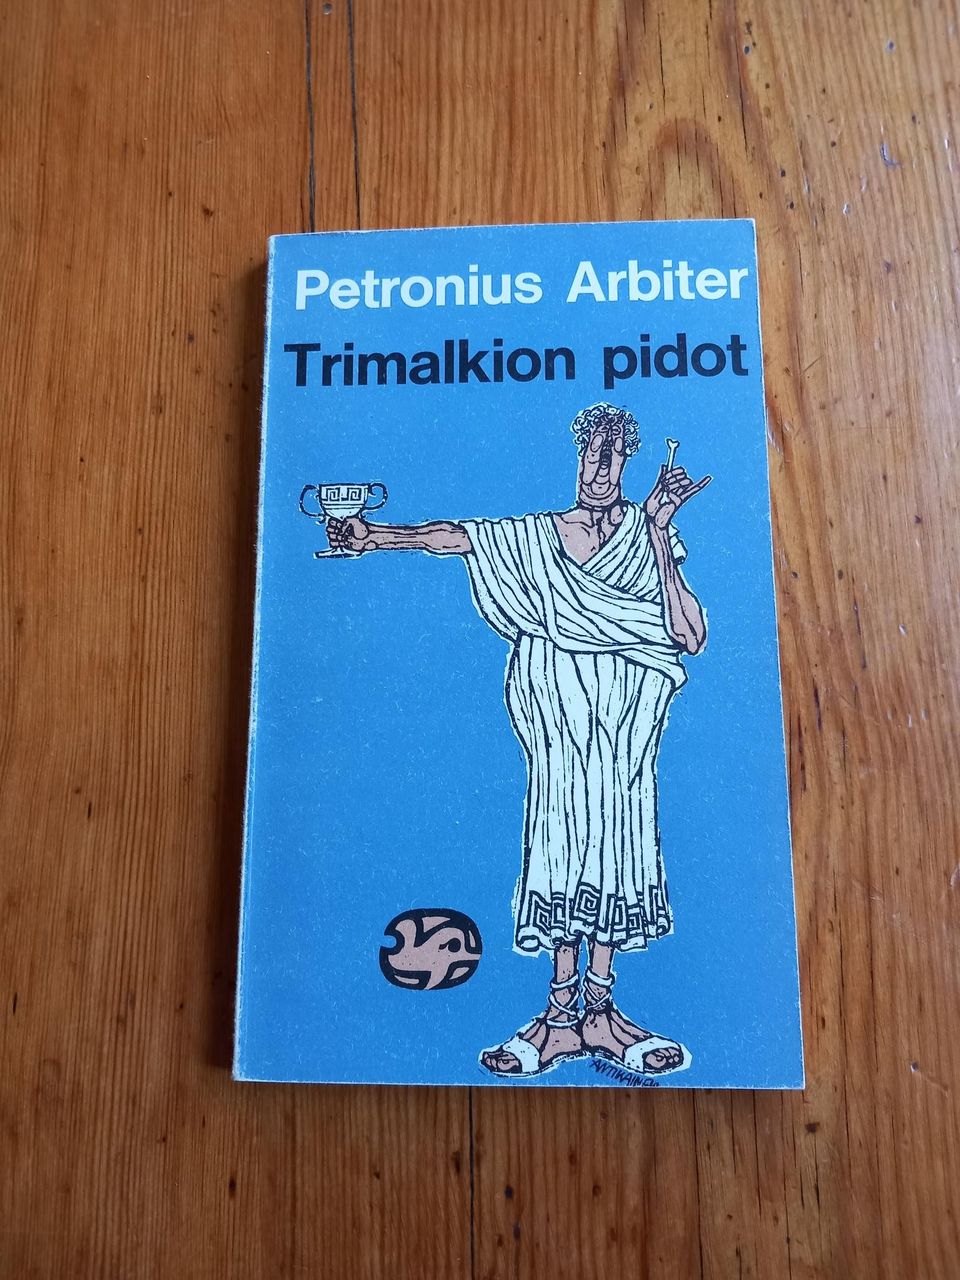 Trimalkion pidot - Petronius Arbiter